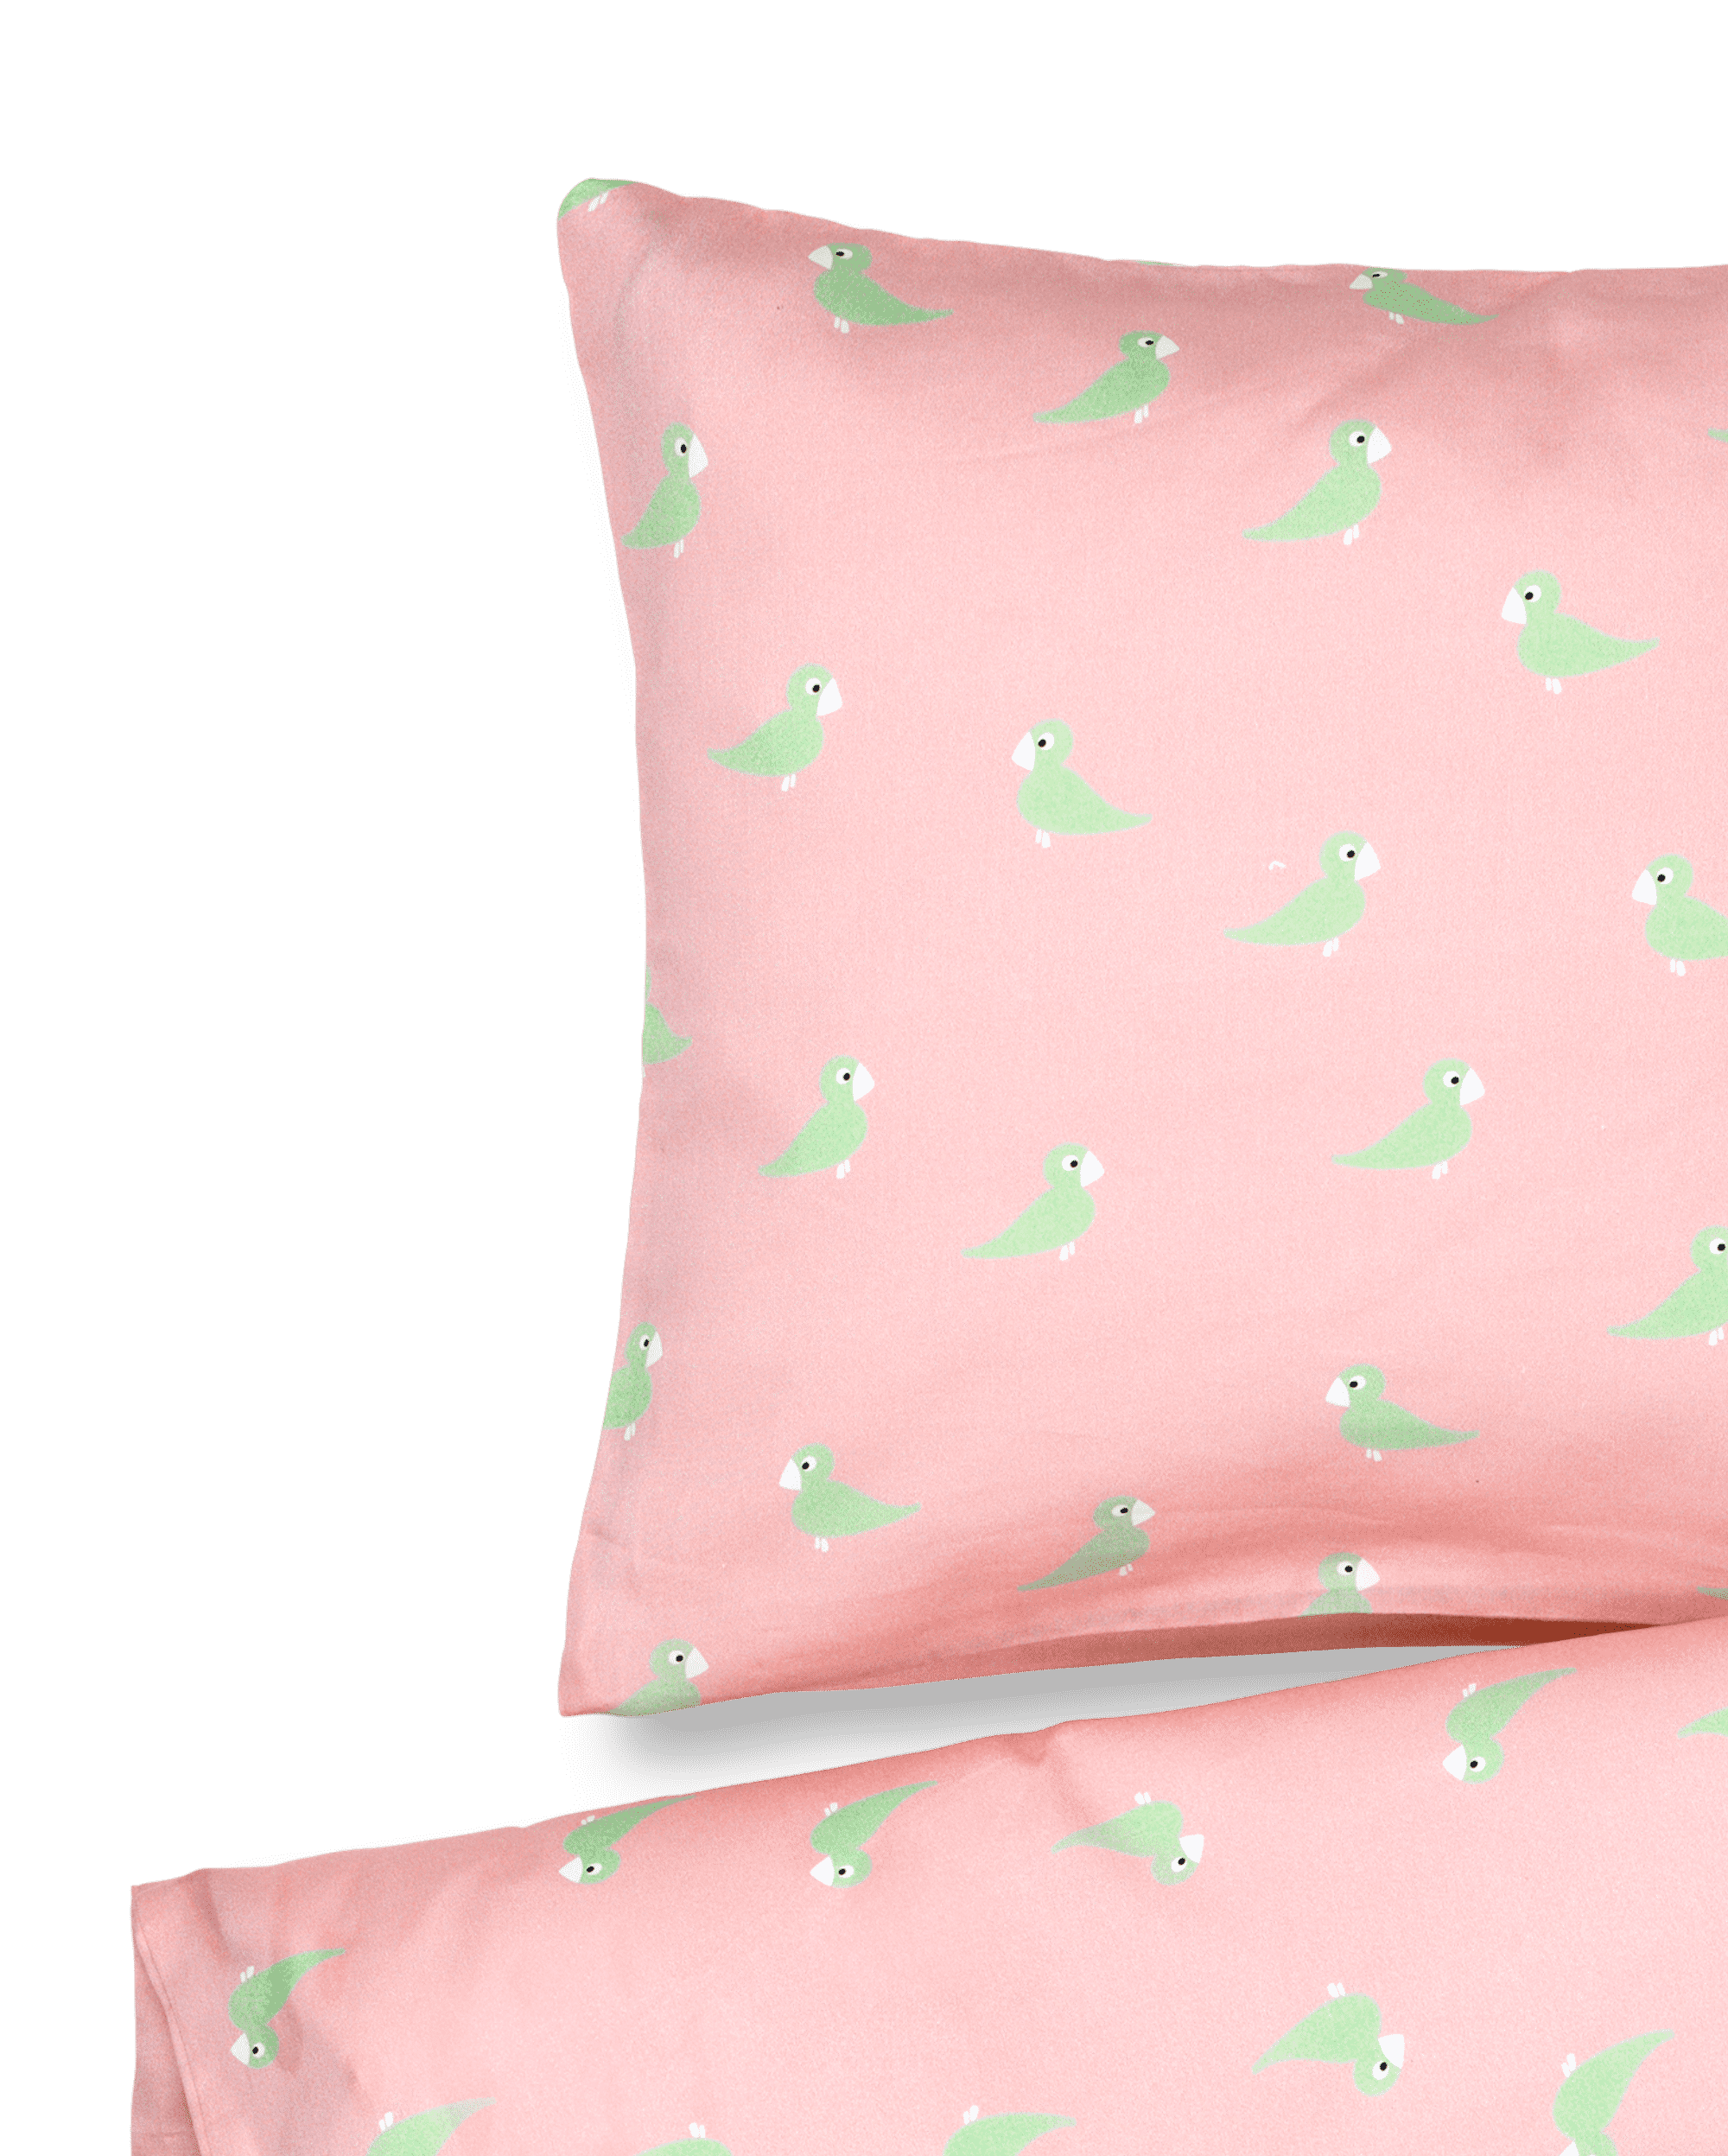 Bed linen Songbird baby 70x100cm DK